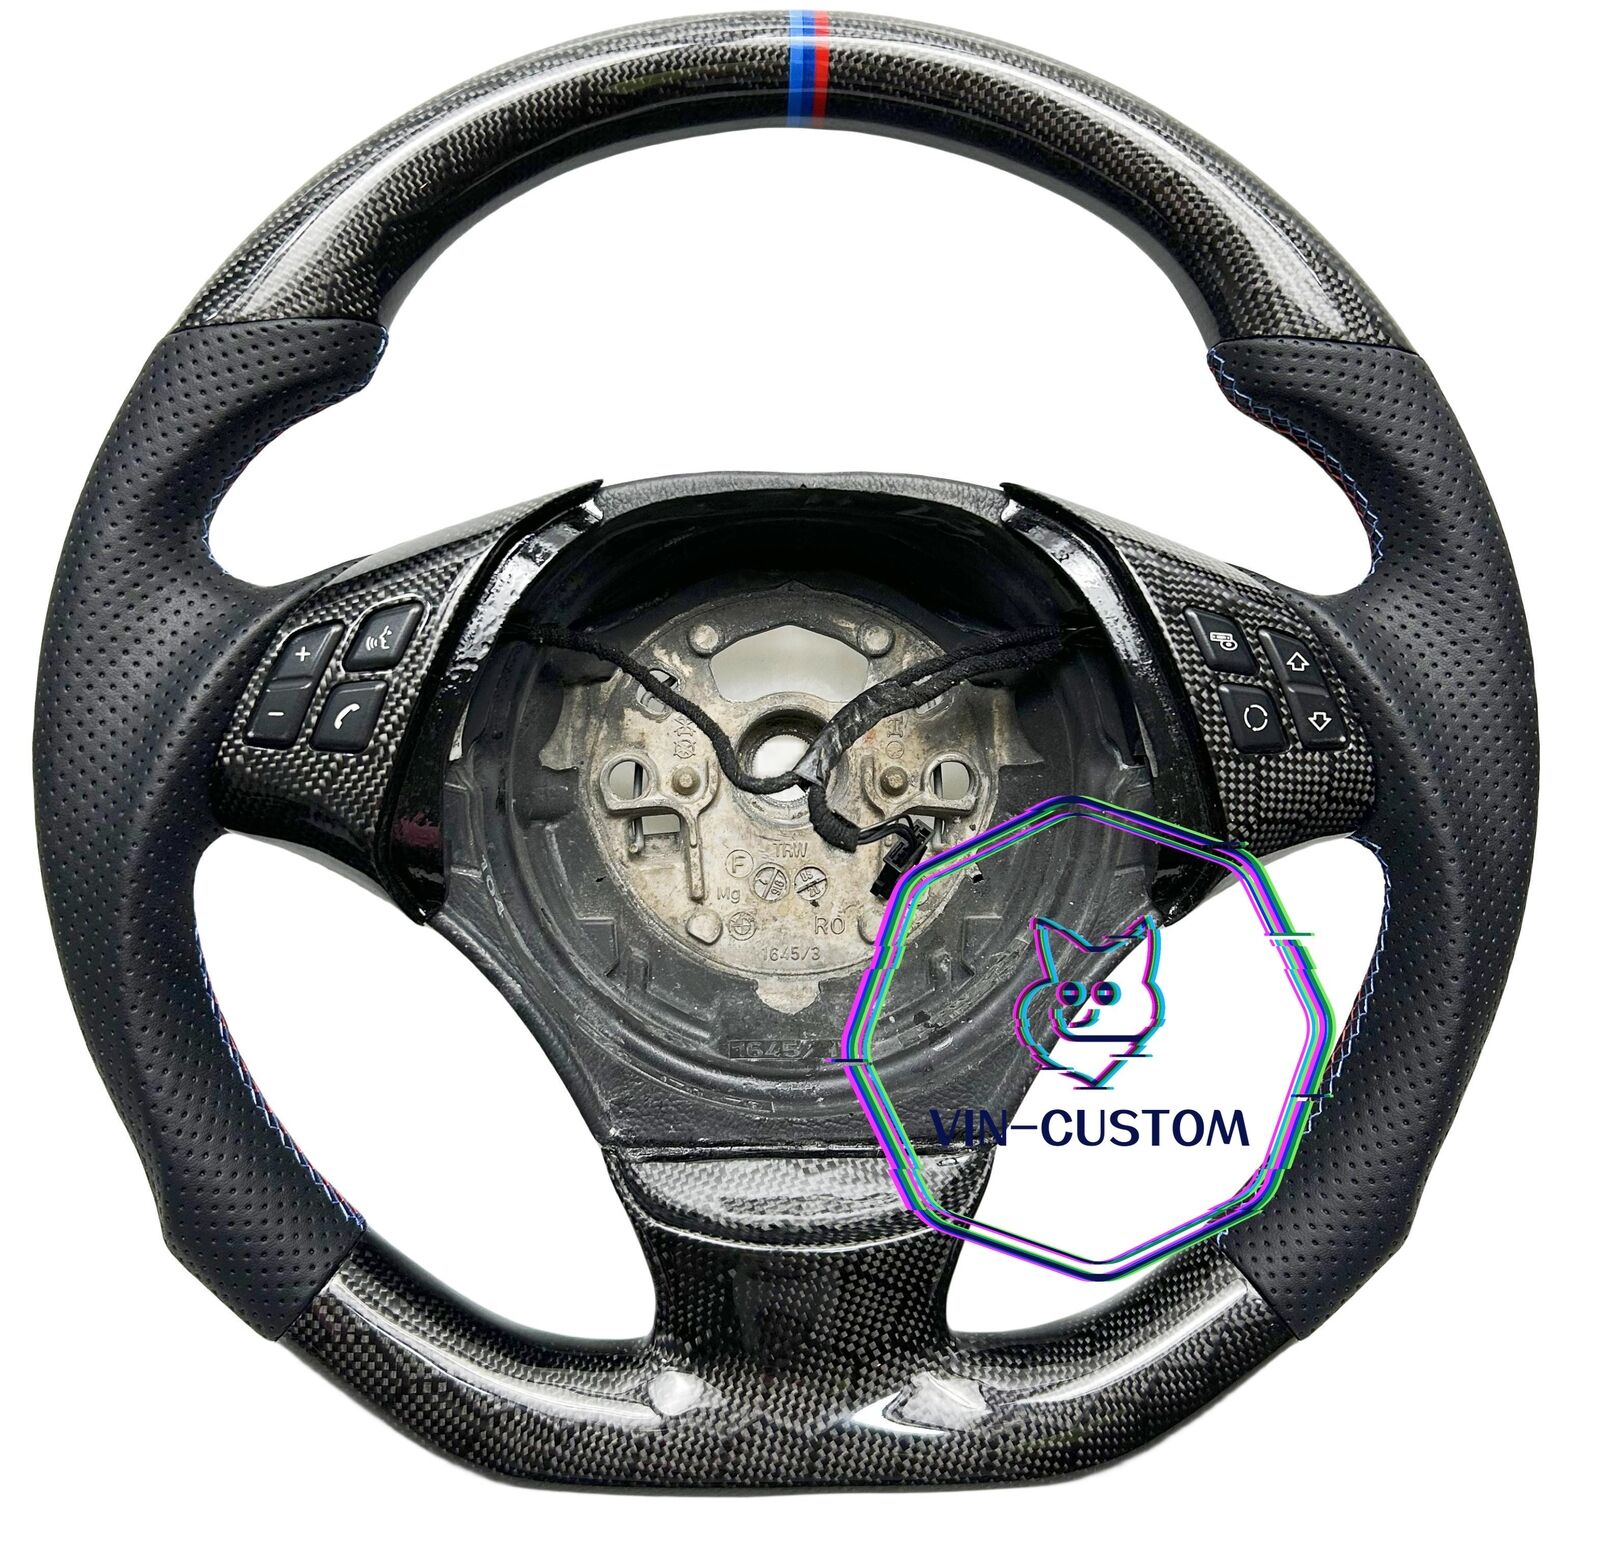 HONEYCOMB CARBON FIBER Steering Wheel FOR BMW E90E91E92 335i 330i 328i W/BUTTONS